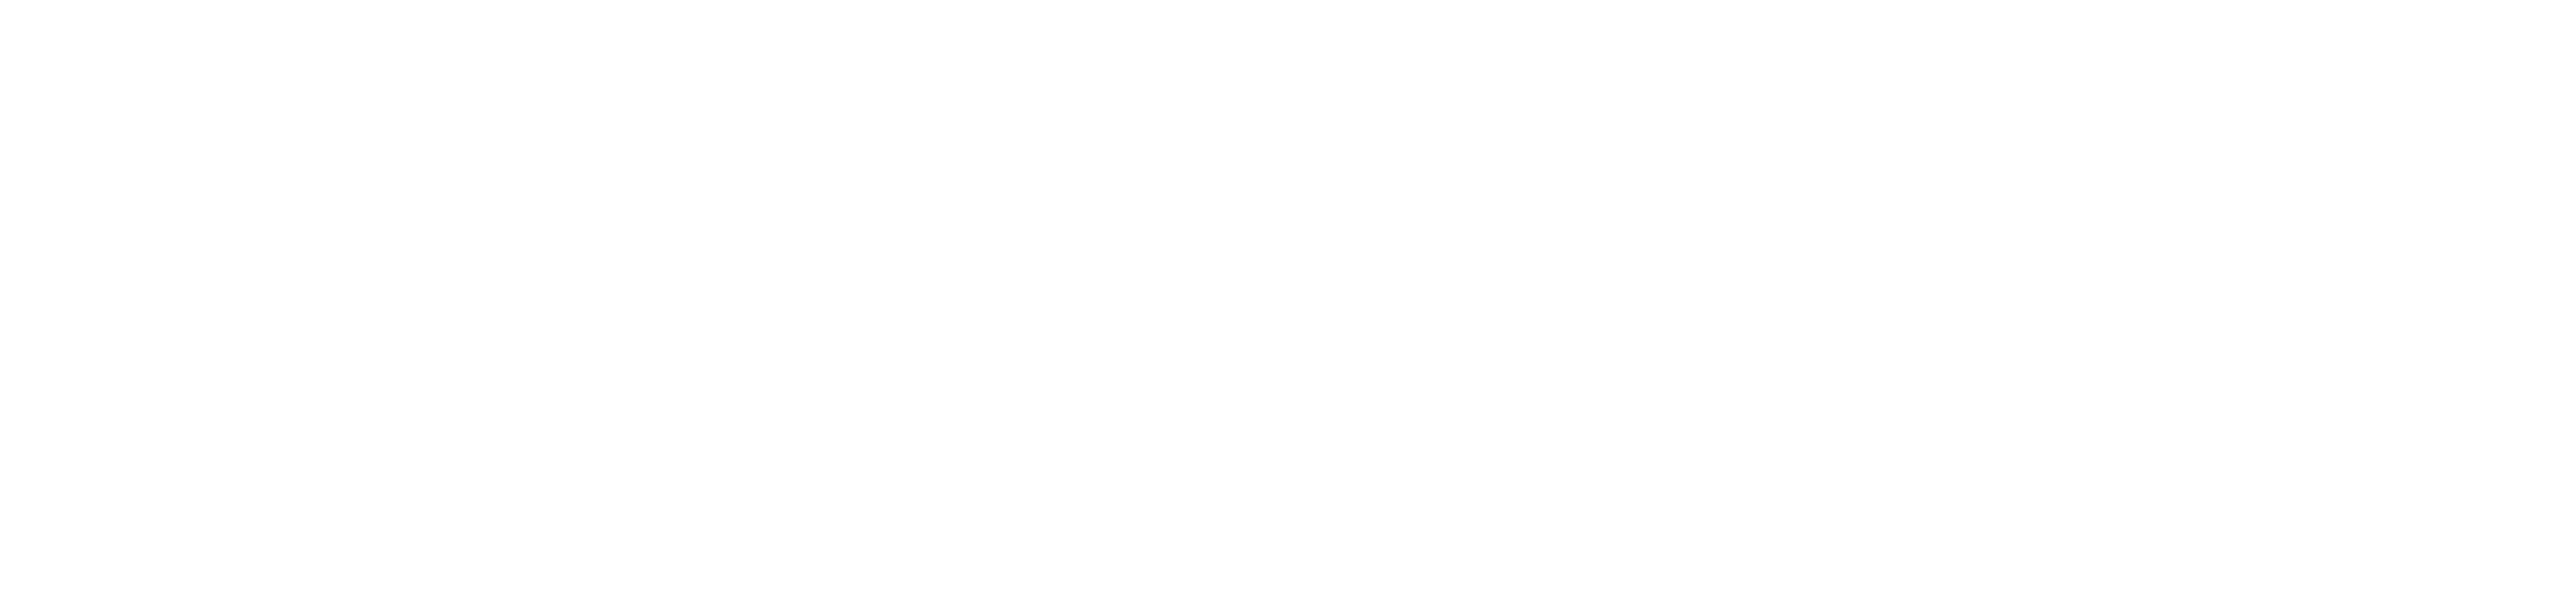 Le gouvernement du grand-duché de Luxembourg - Ministère des sports